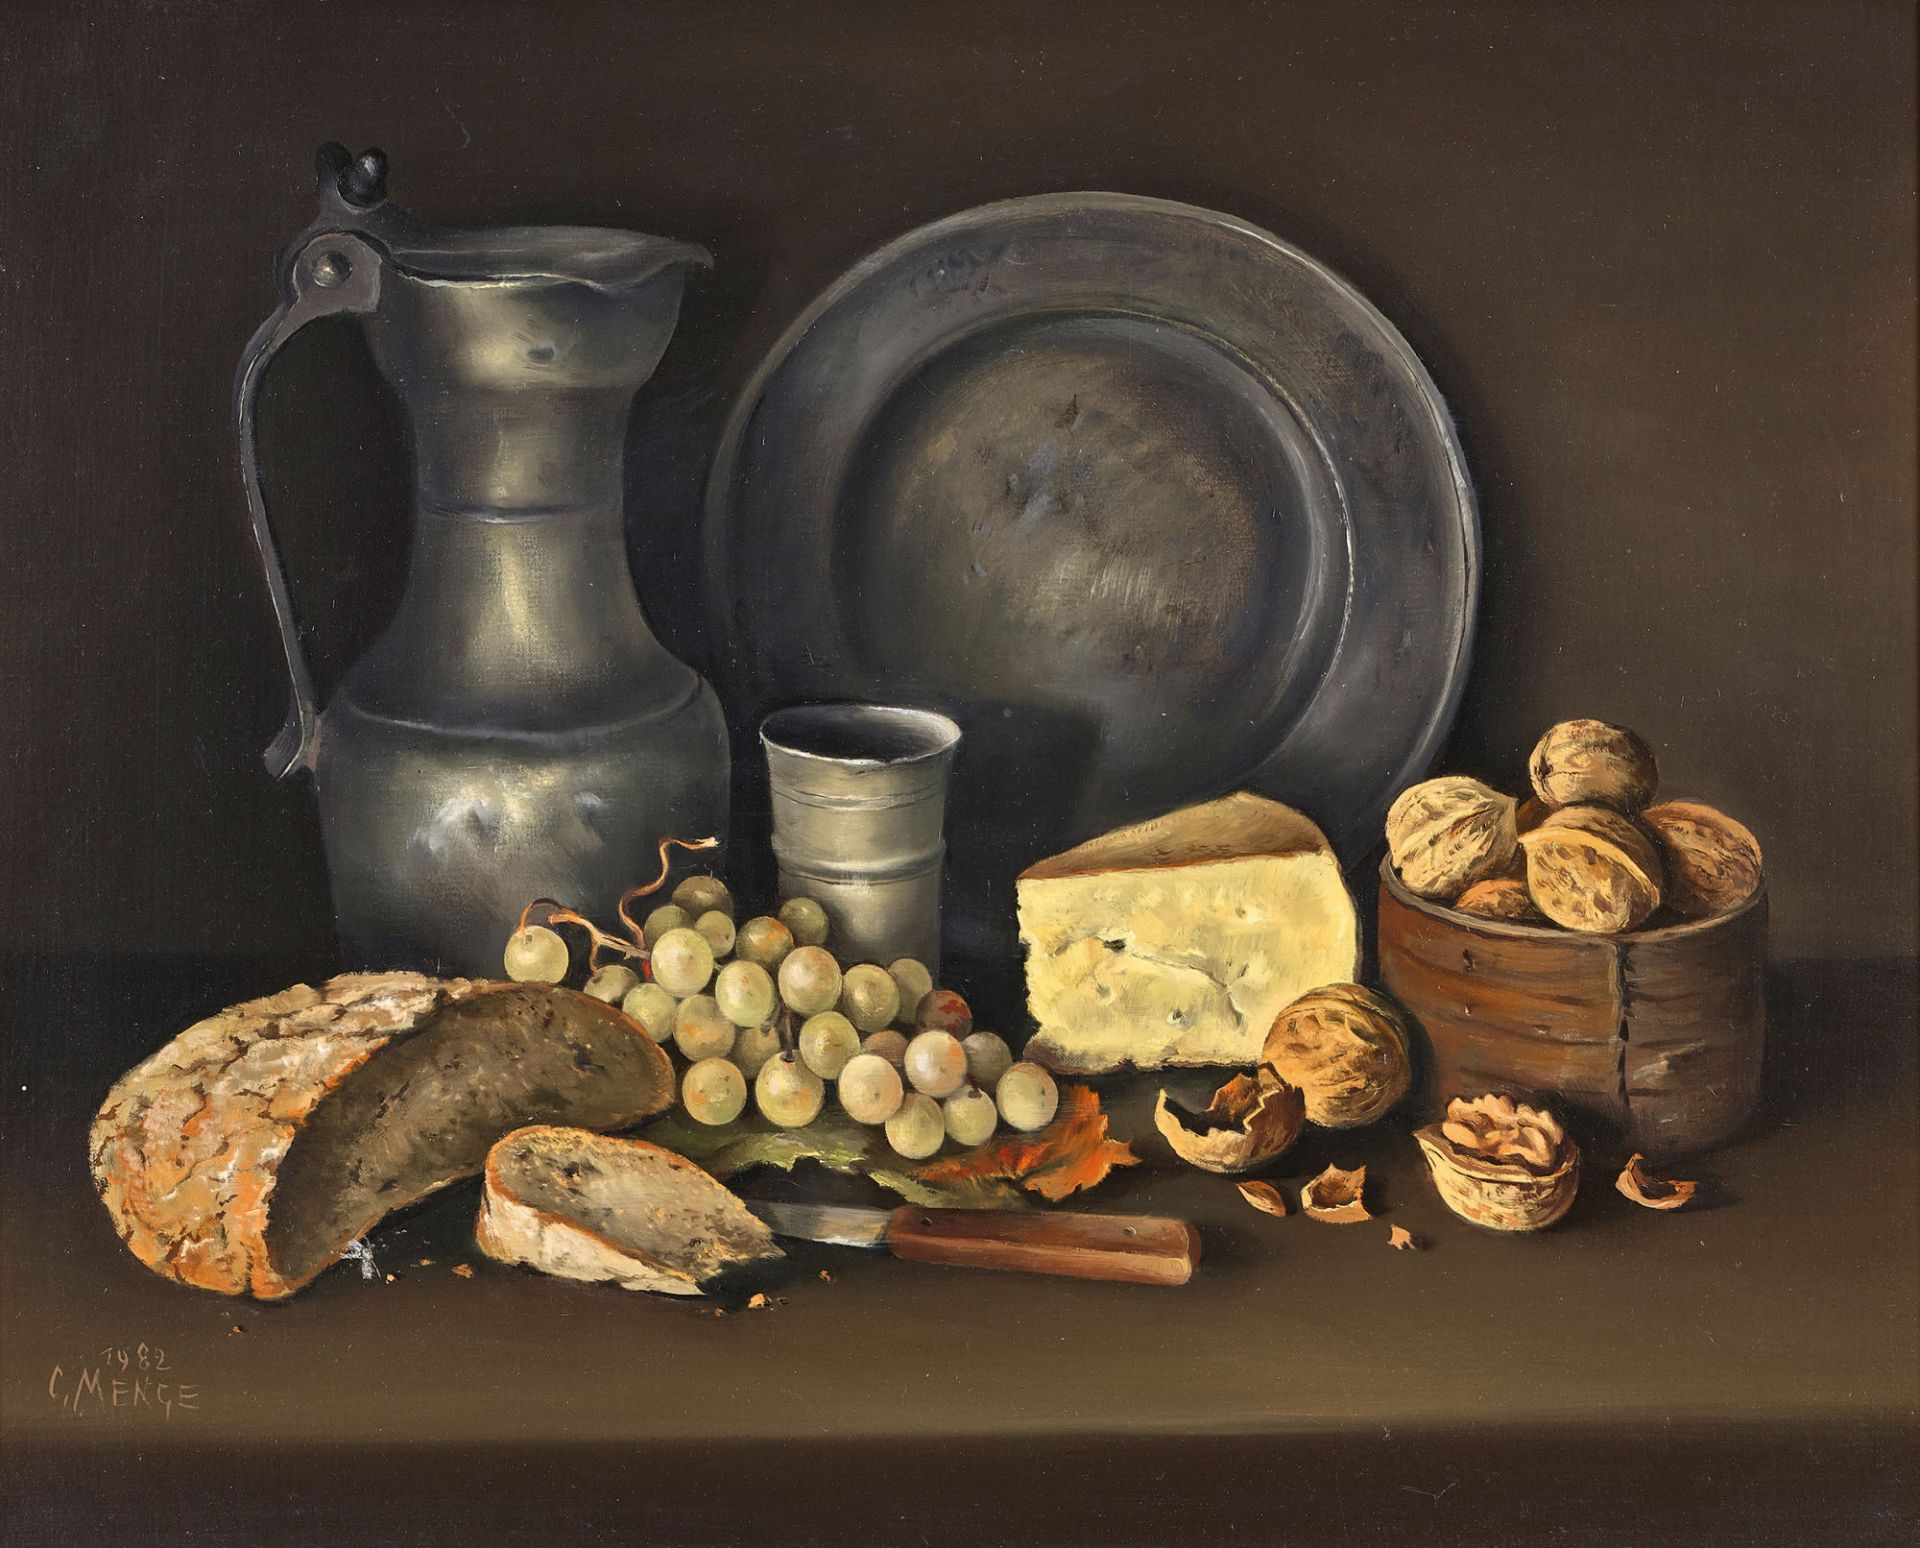 MENGE, CHARLES: Stillleben mit Brot, Käse, Trauben, Nüssen und Zinngeschirr.